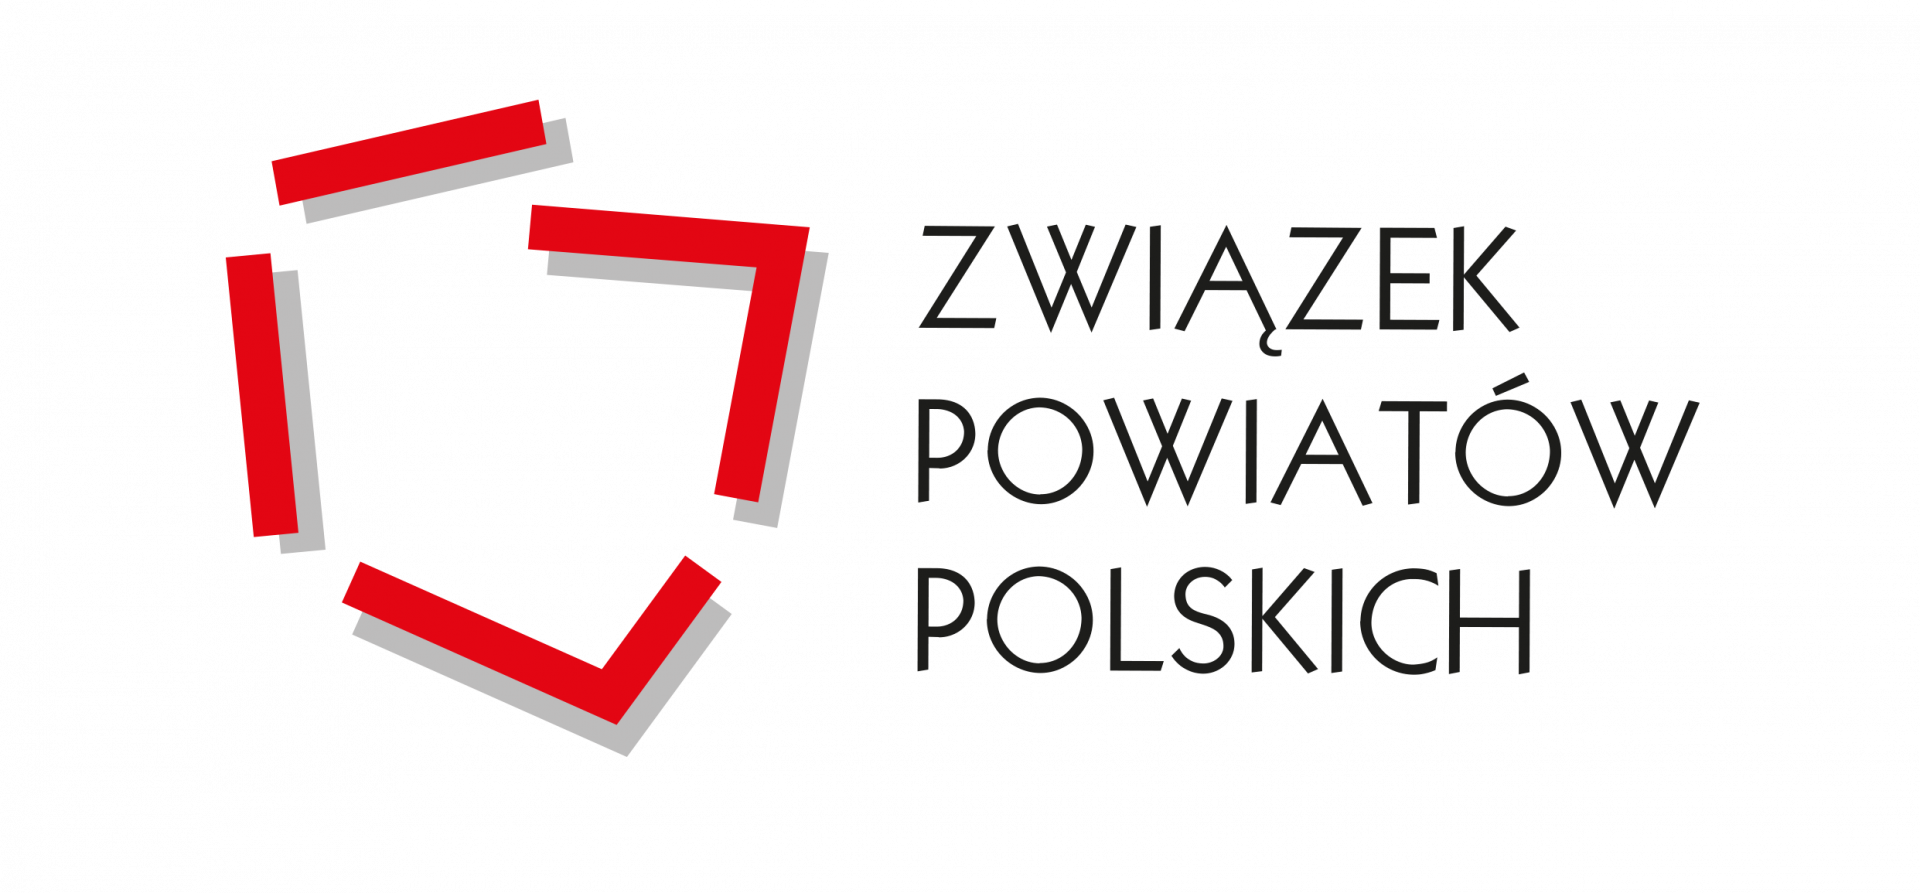 Informacja dotycząca Związku Powiatów Polskich